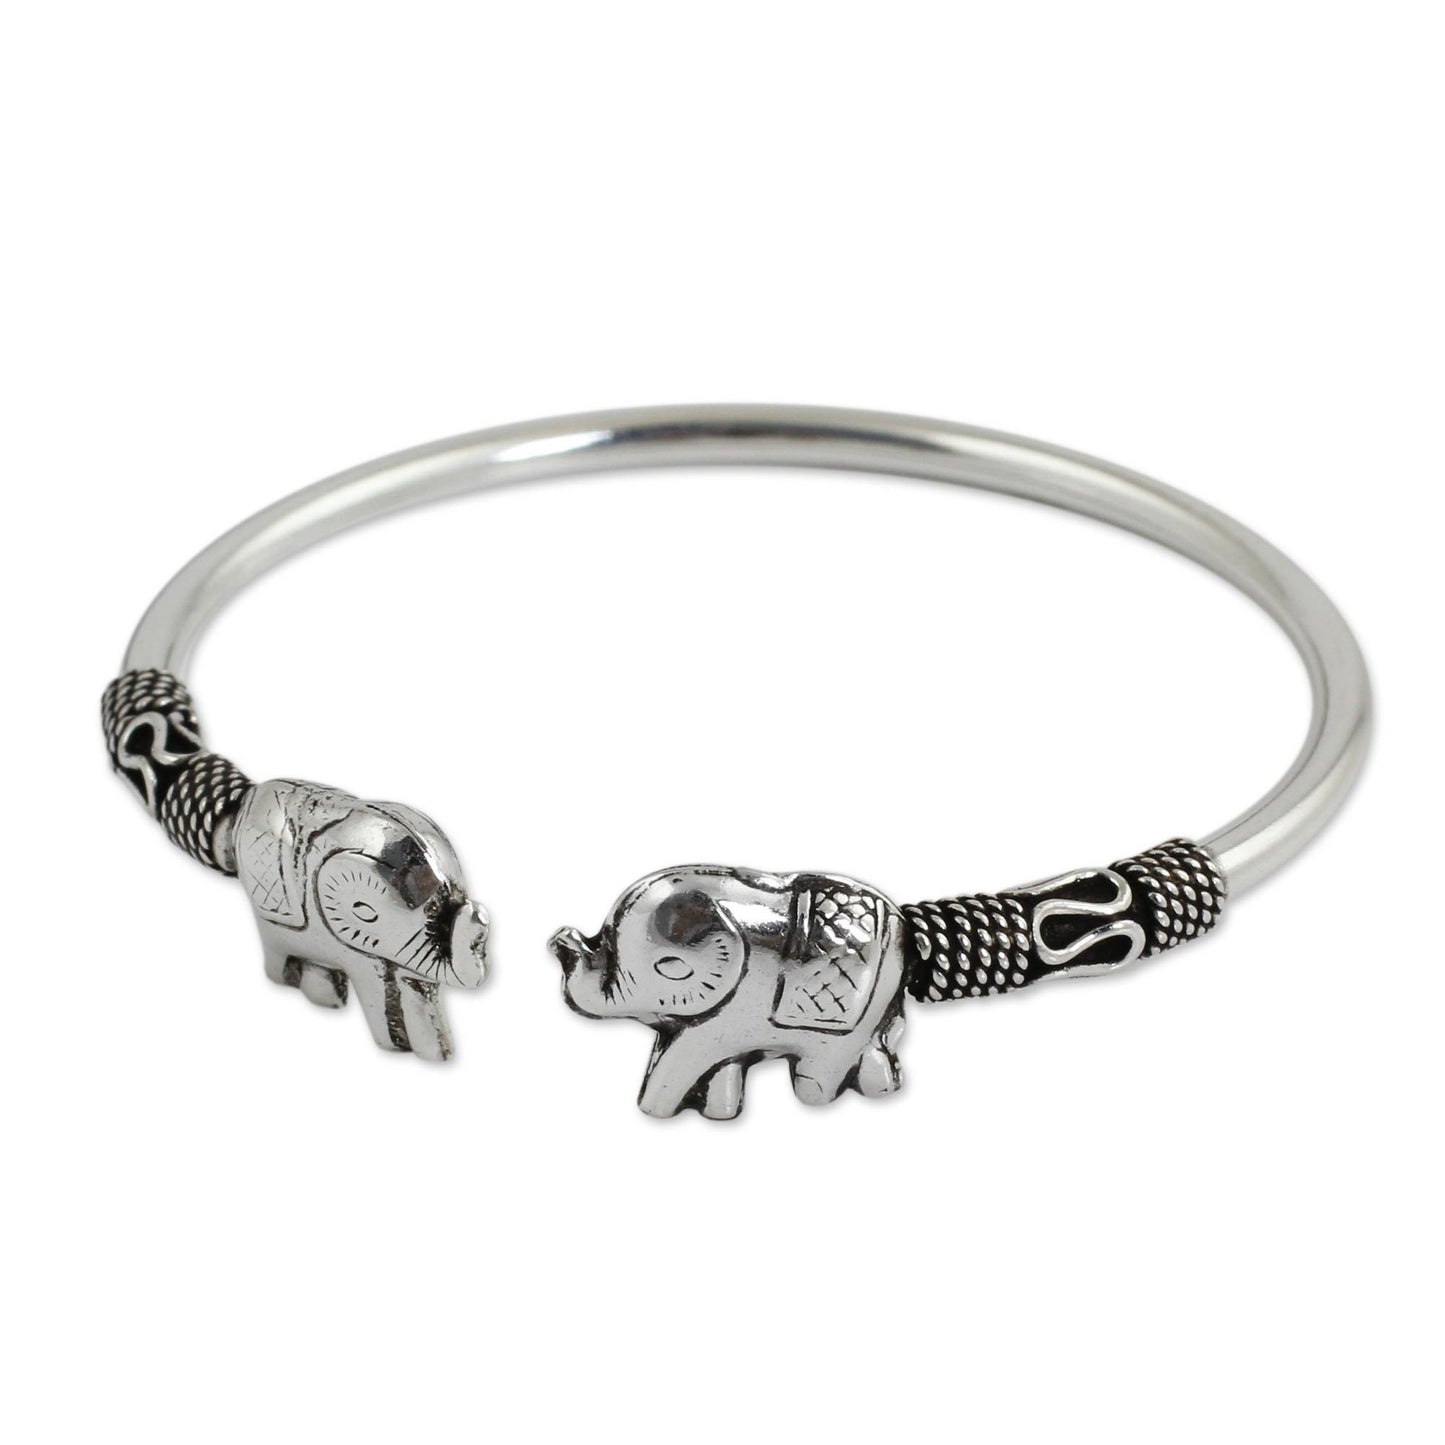 Proud Elephant Sterling Silver Cuff Bracelet